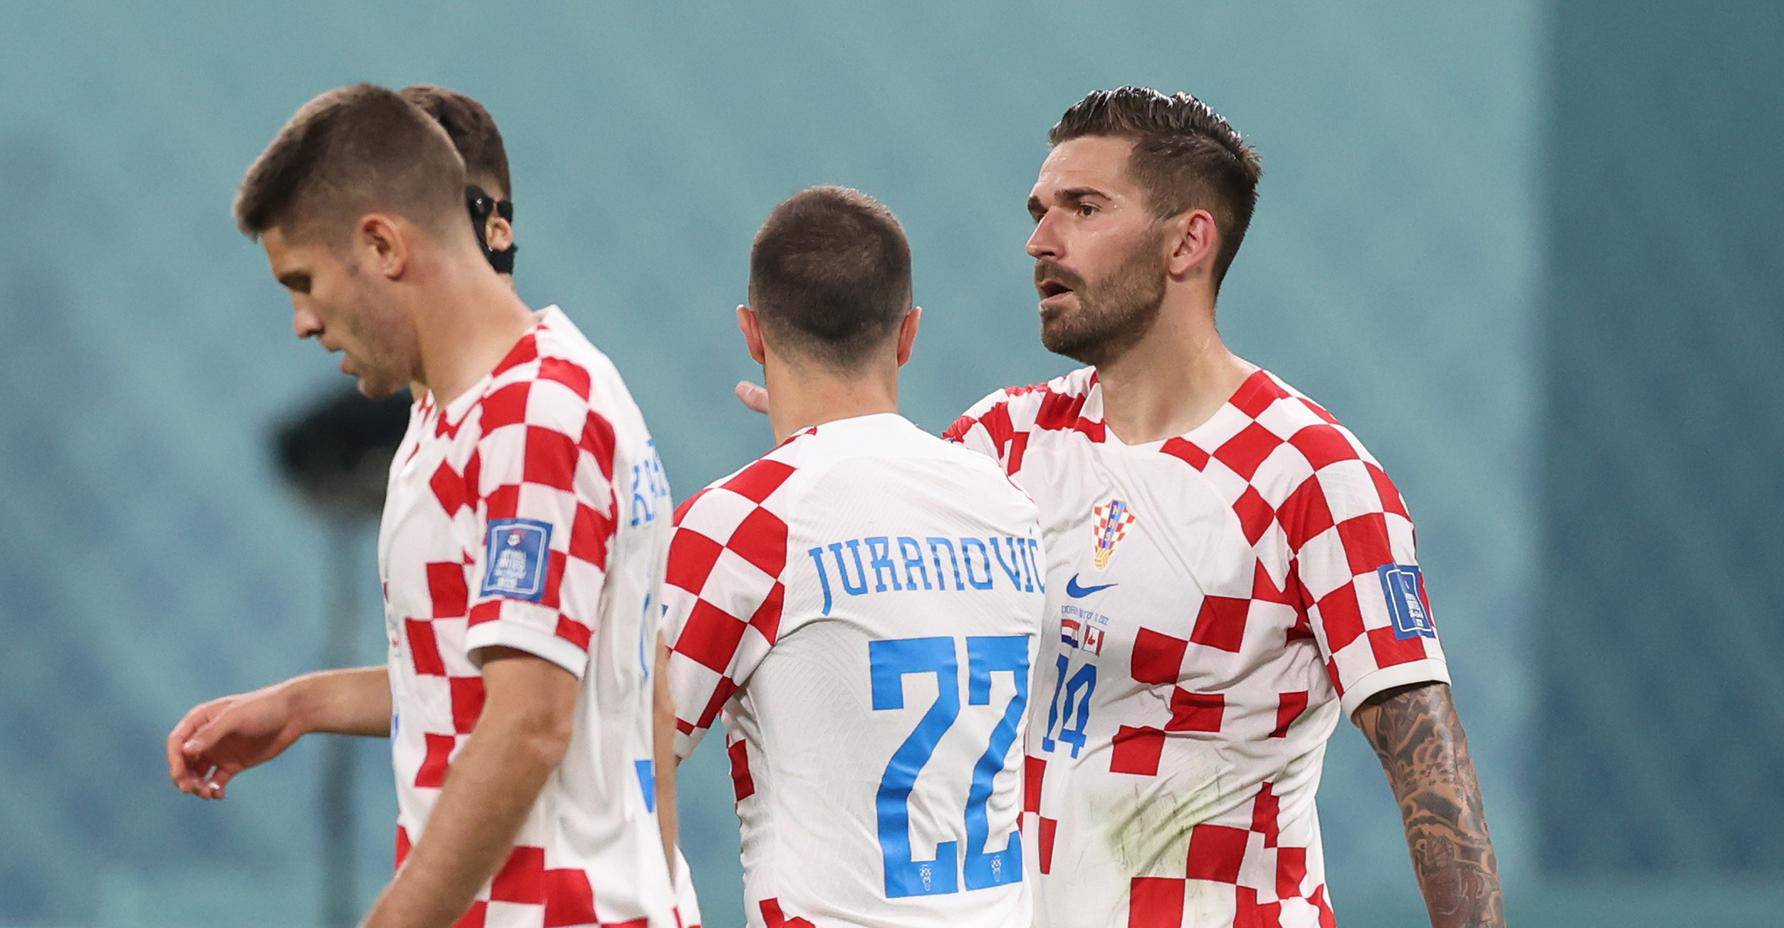 KATAR 2022 - Hrvatska protiv Kanade završila poluvrijeme pogotkom Livaje za 2:1